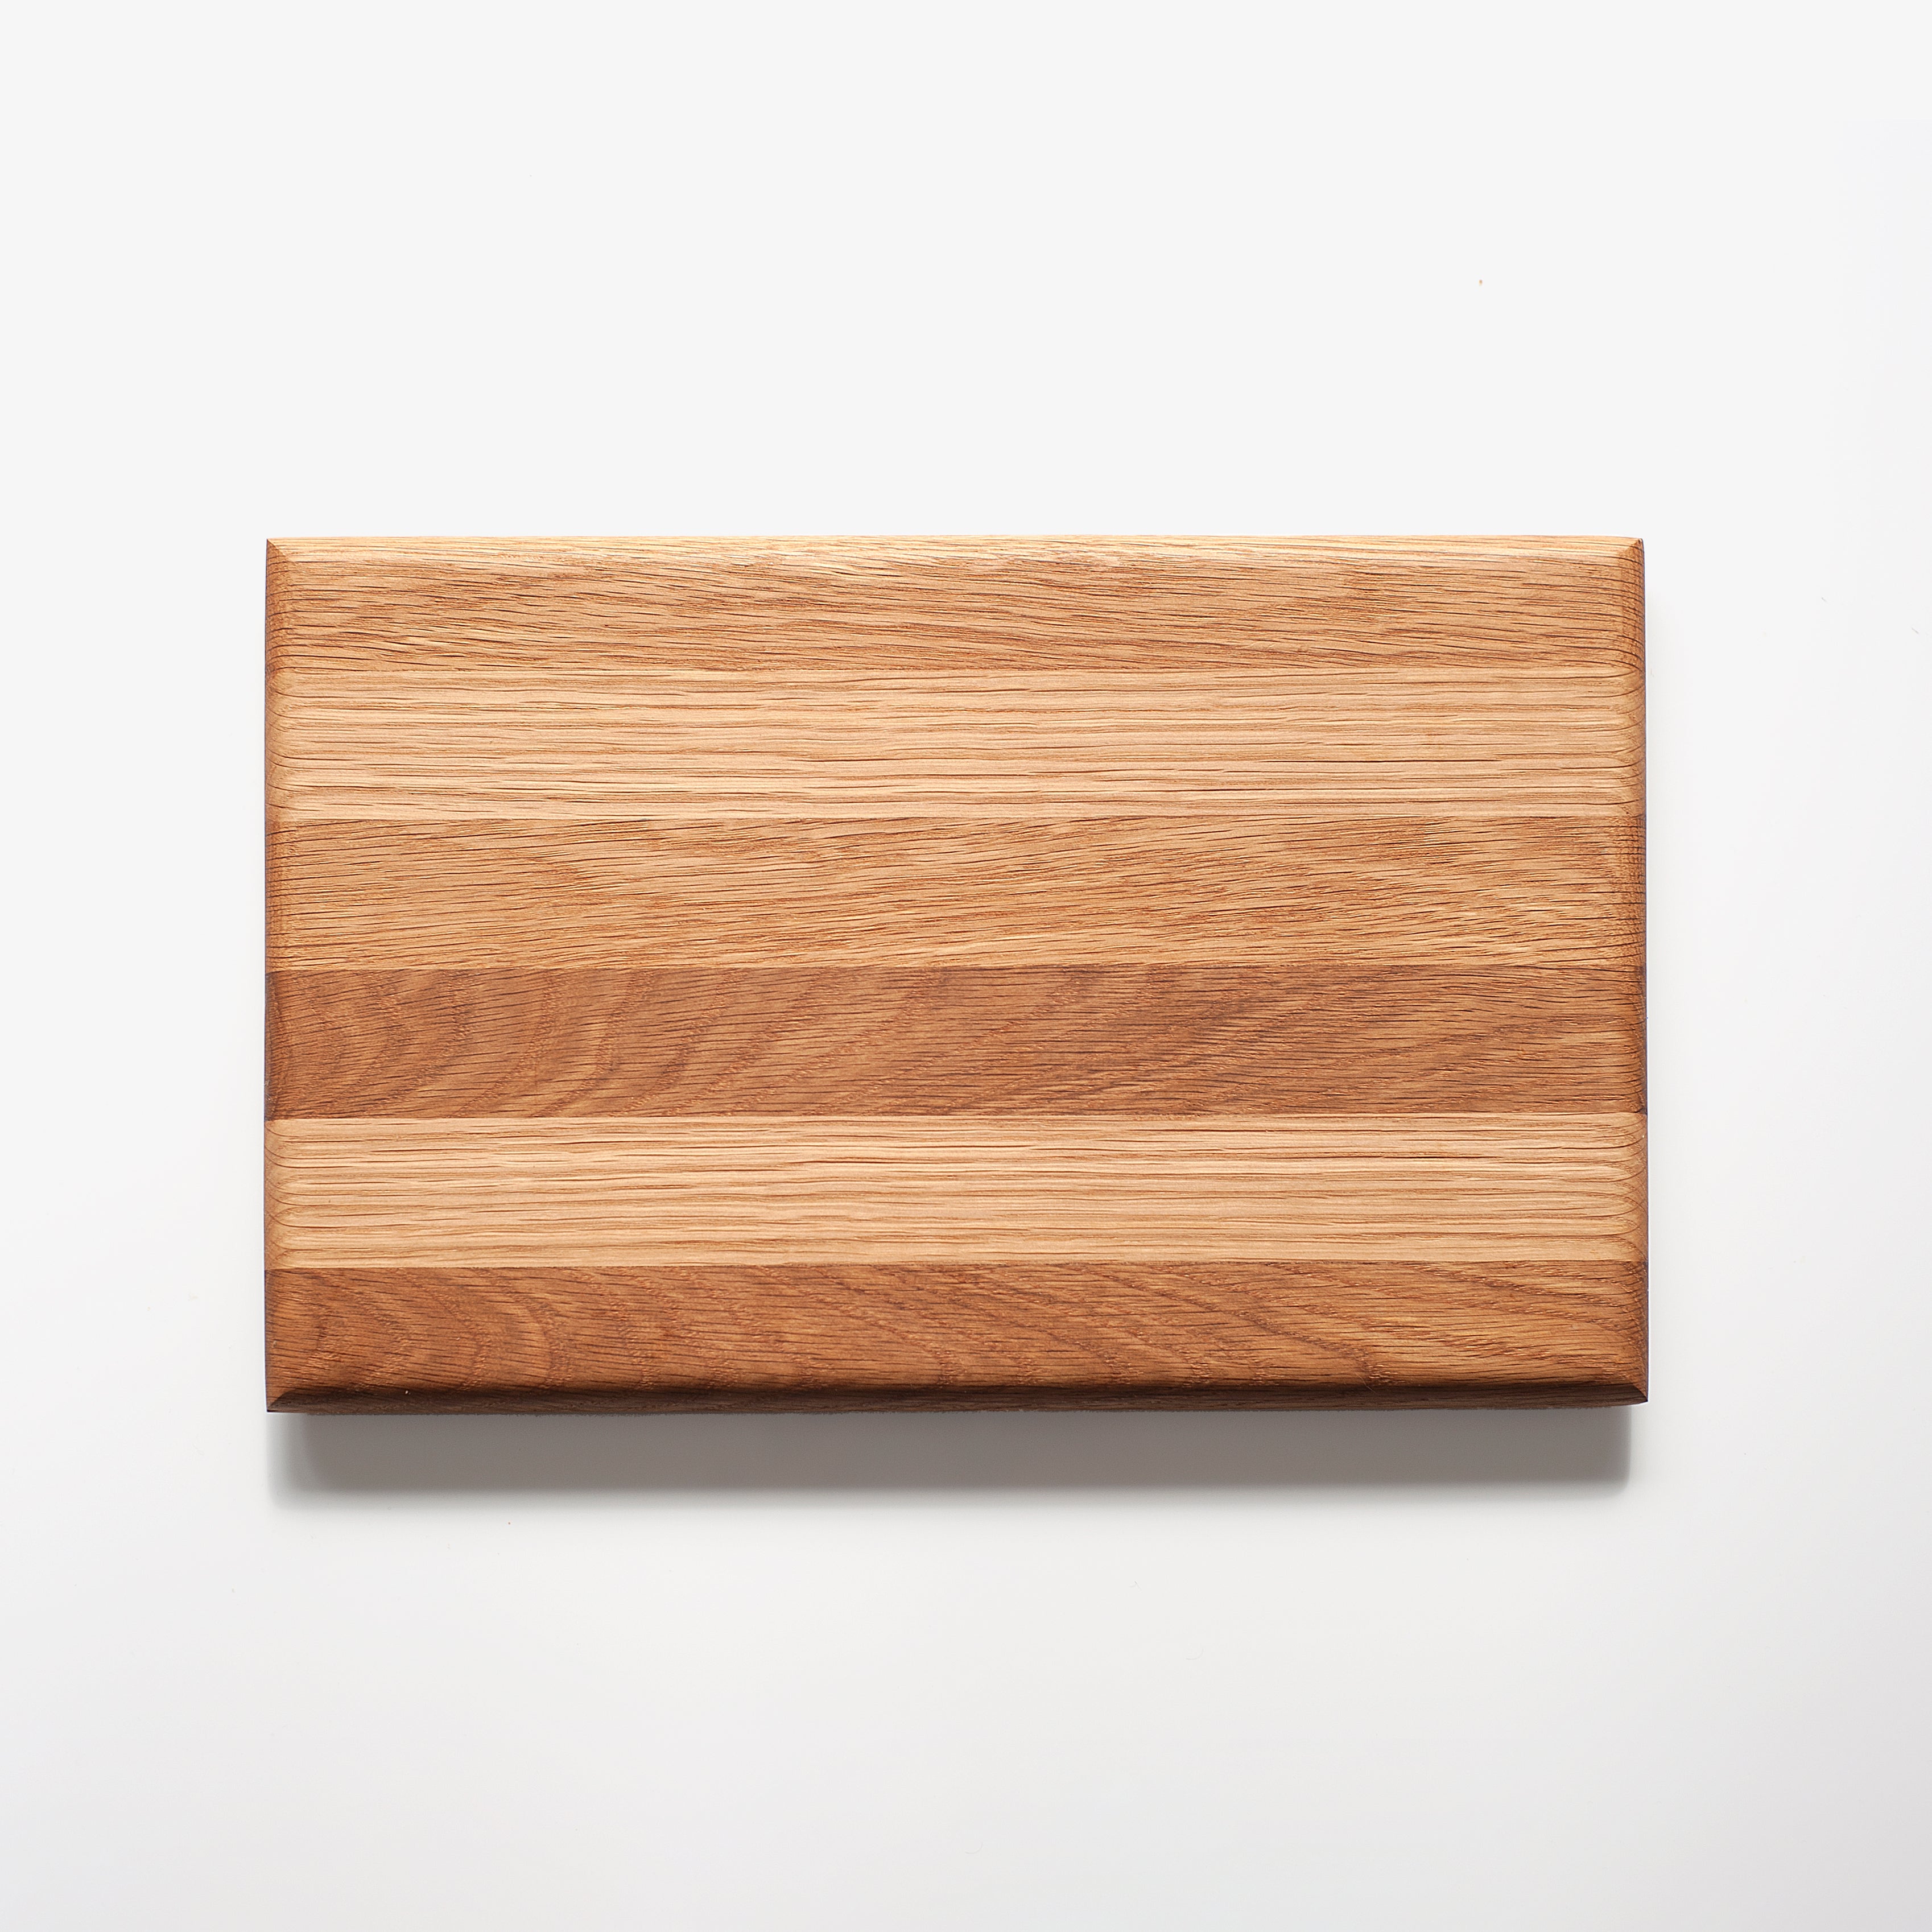 Terra Oak Board / Platter